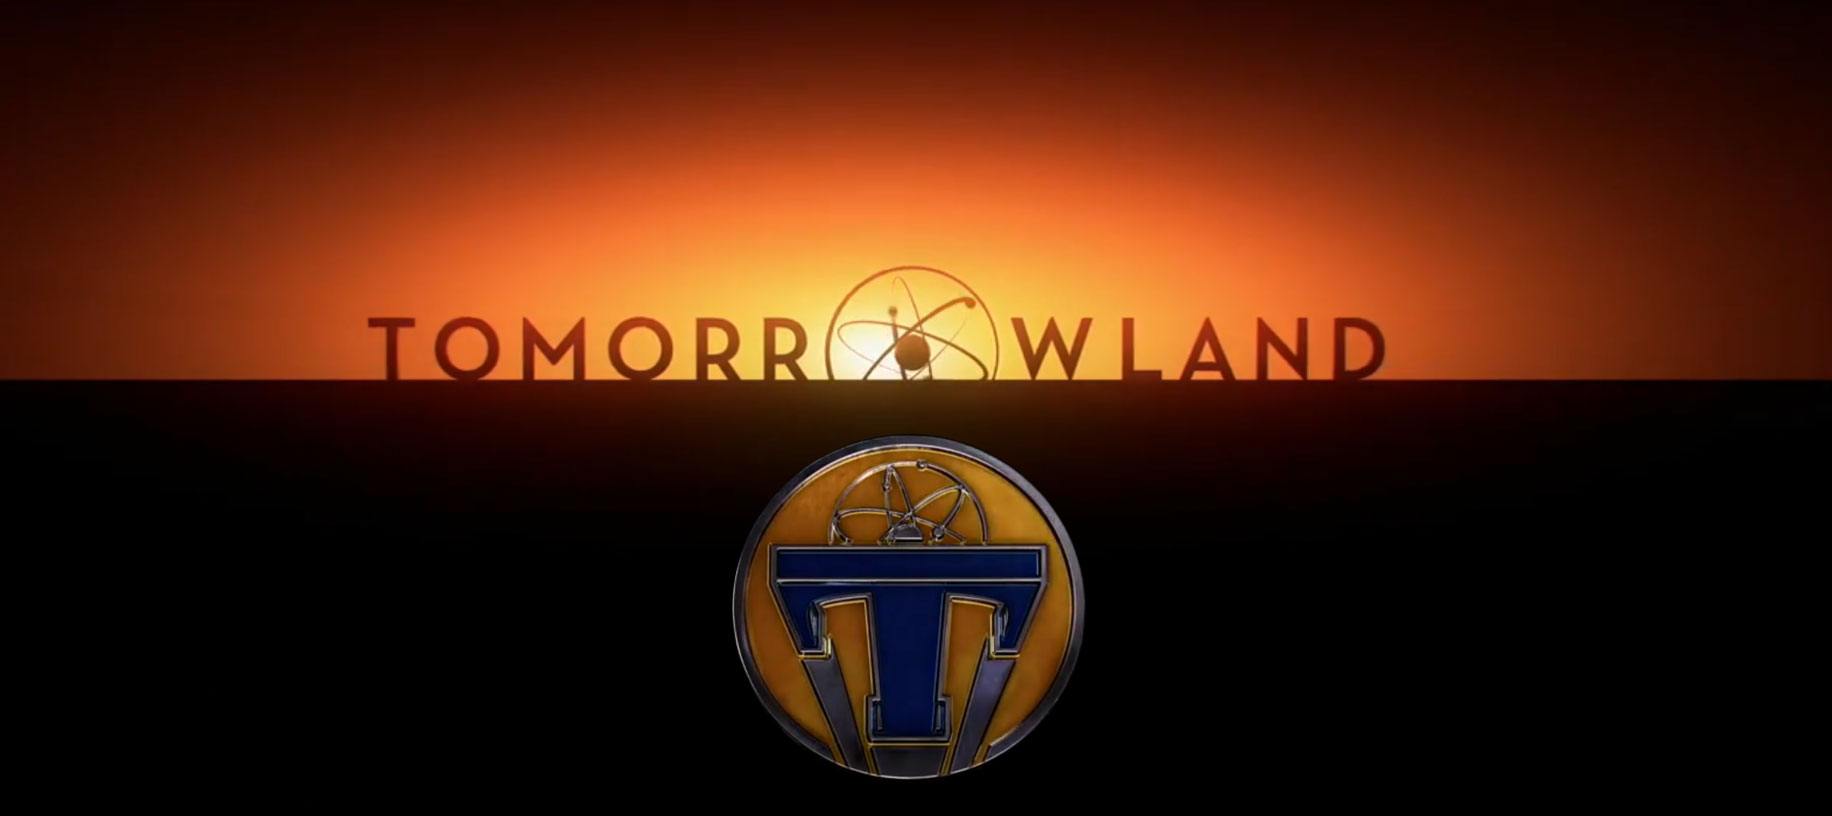 tomorrowland-logo.jpg